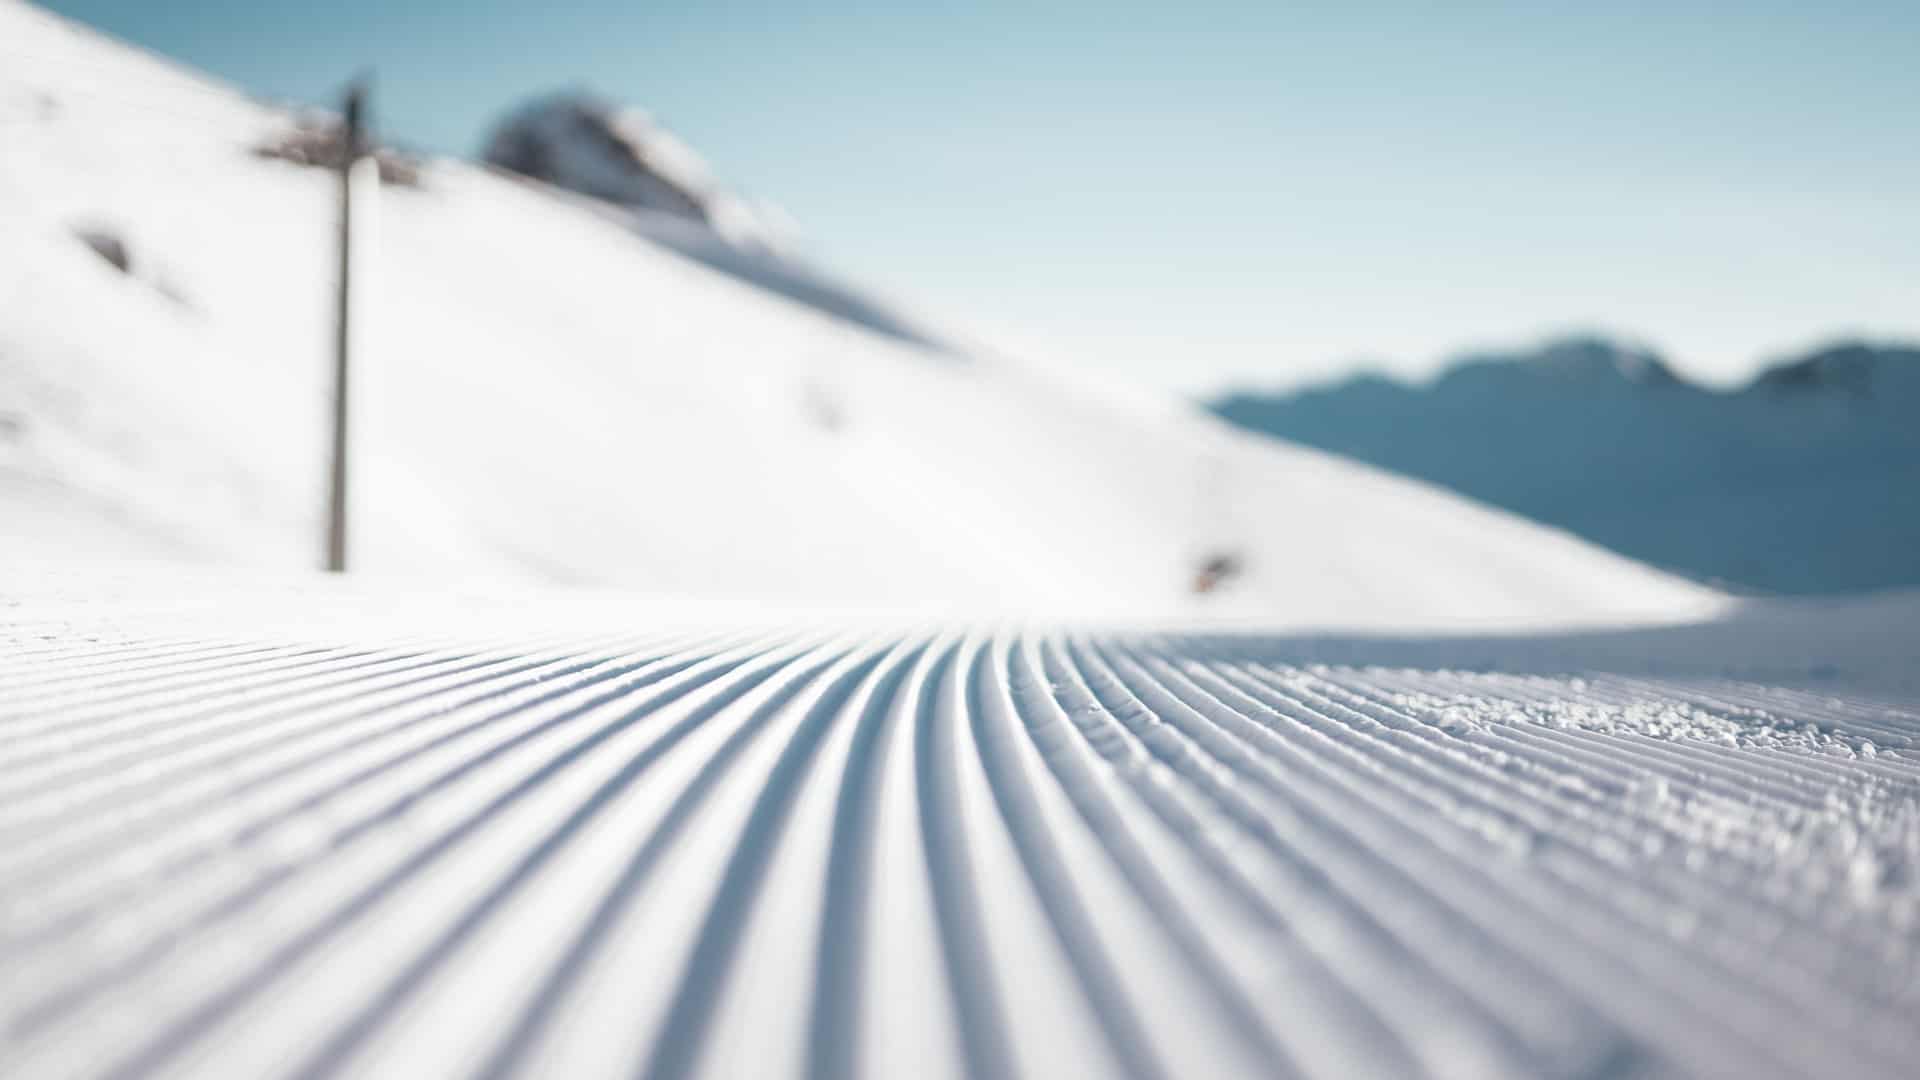 Brak śniegu może być problemem dla sezonu narciarskiego? Sprawdzamy